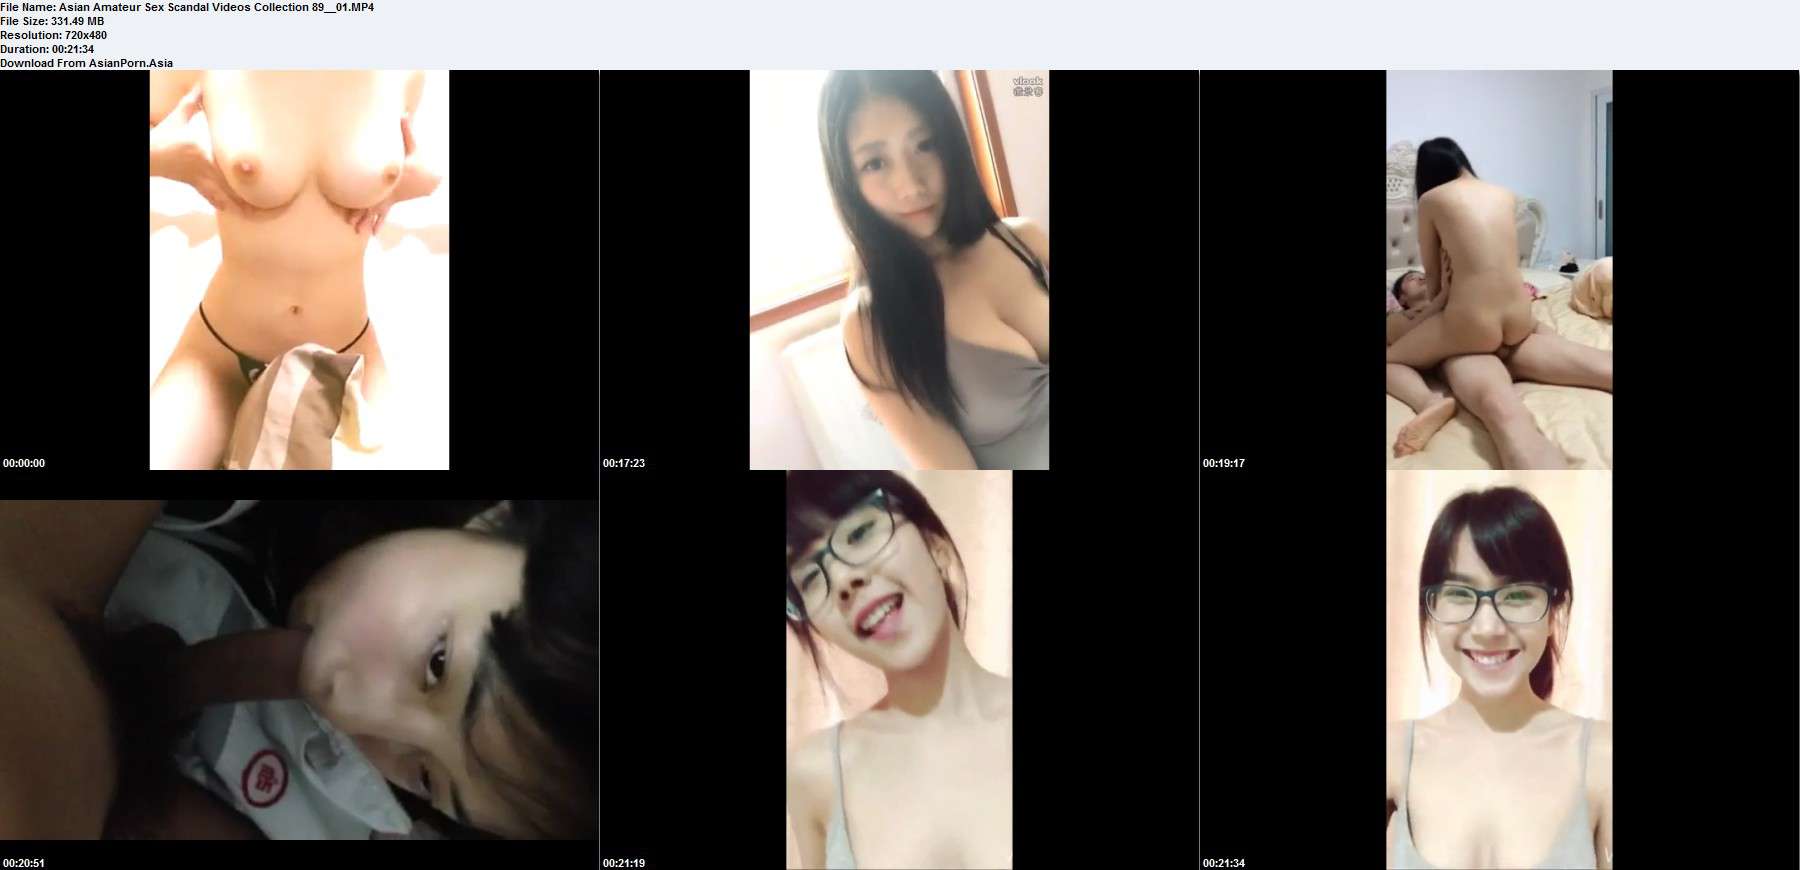 Asian Amateur Sex Scandal Videos Collection 88